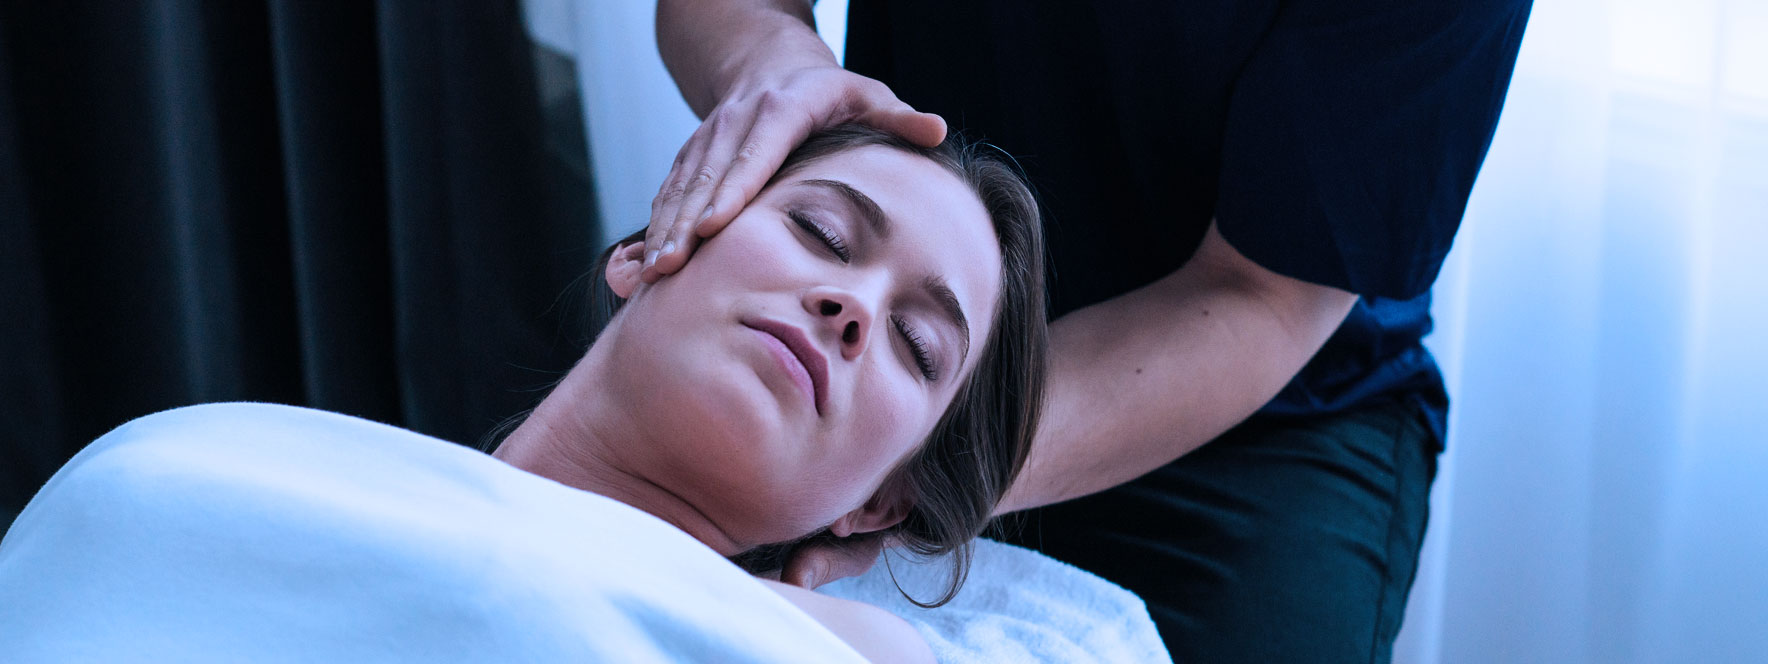 Massothérapeute ajoute des mobilisations passives à une routine de massage